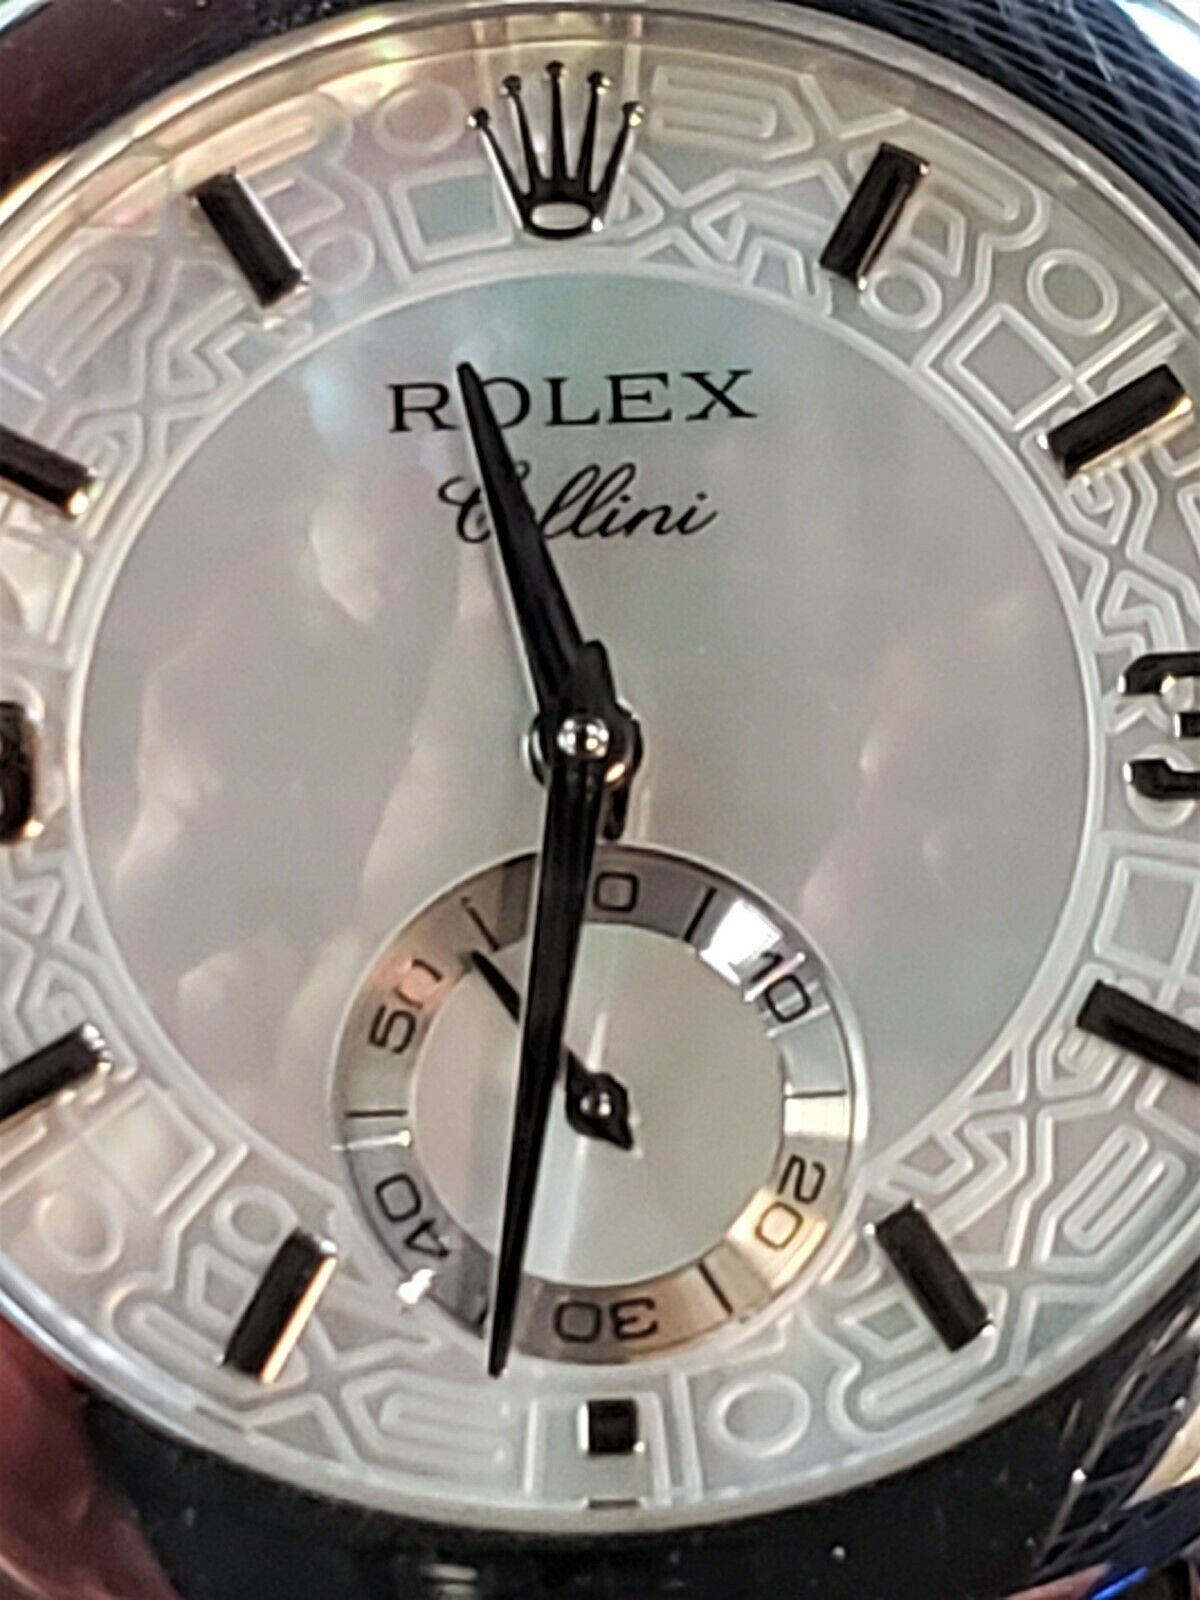 ROLEX Cellini Cellinium Men's Platinum Watch 5240 MOP Dial Black Leather Band